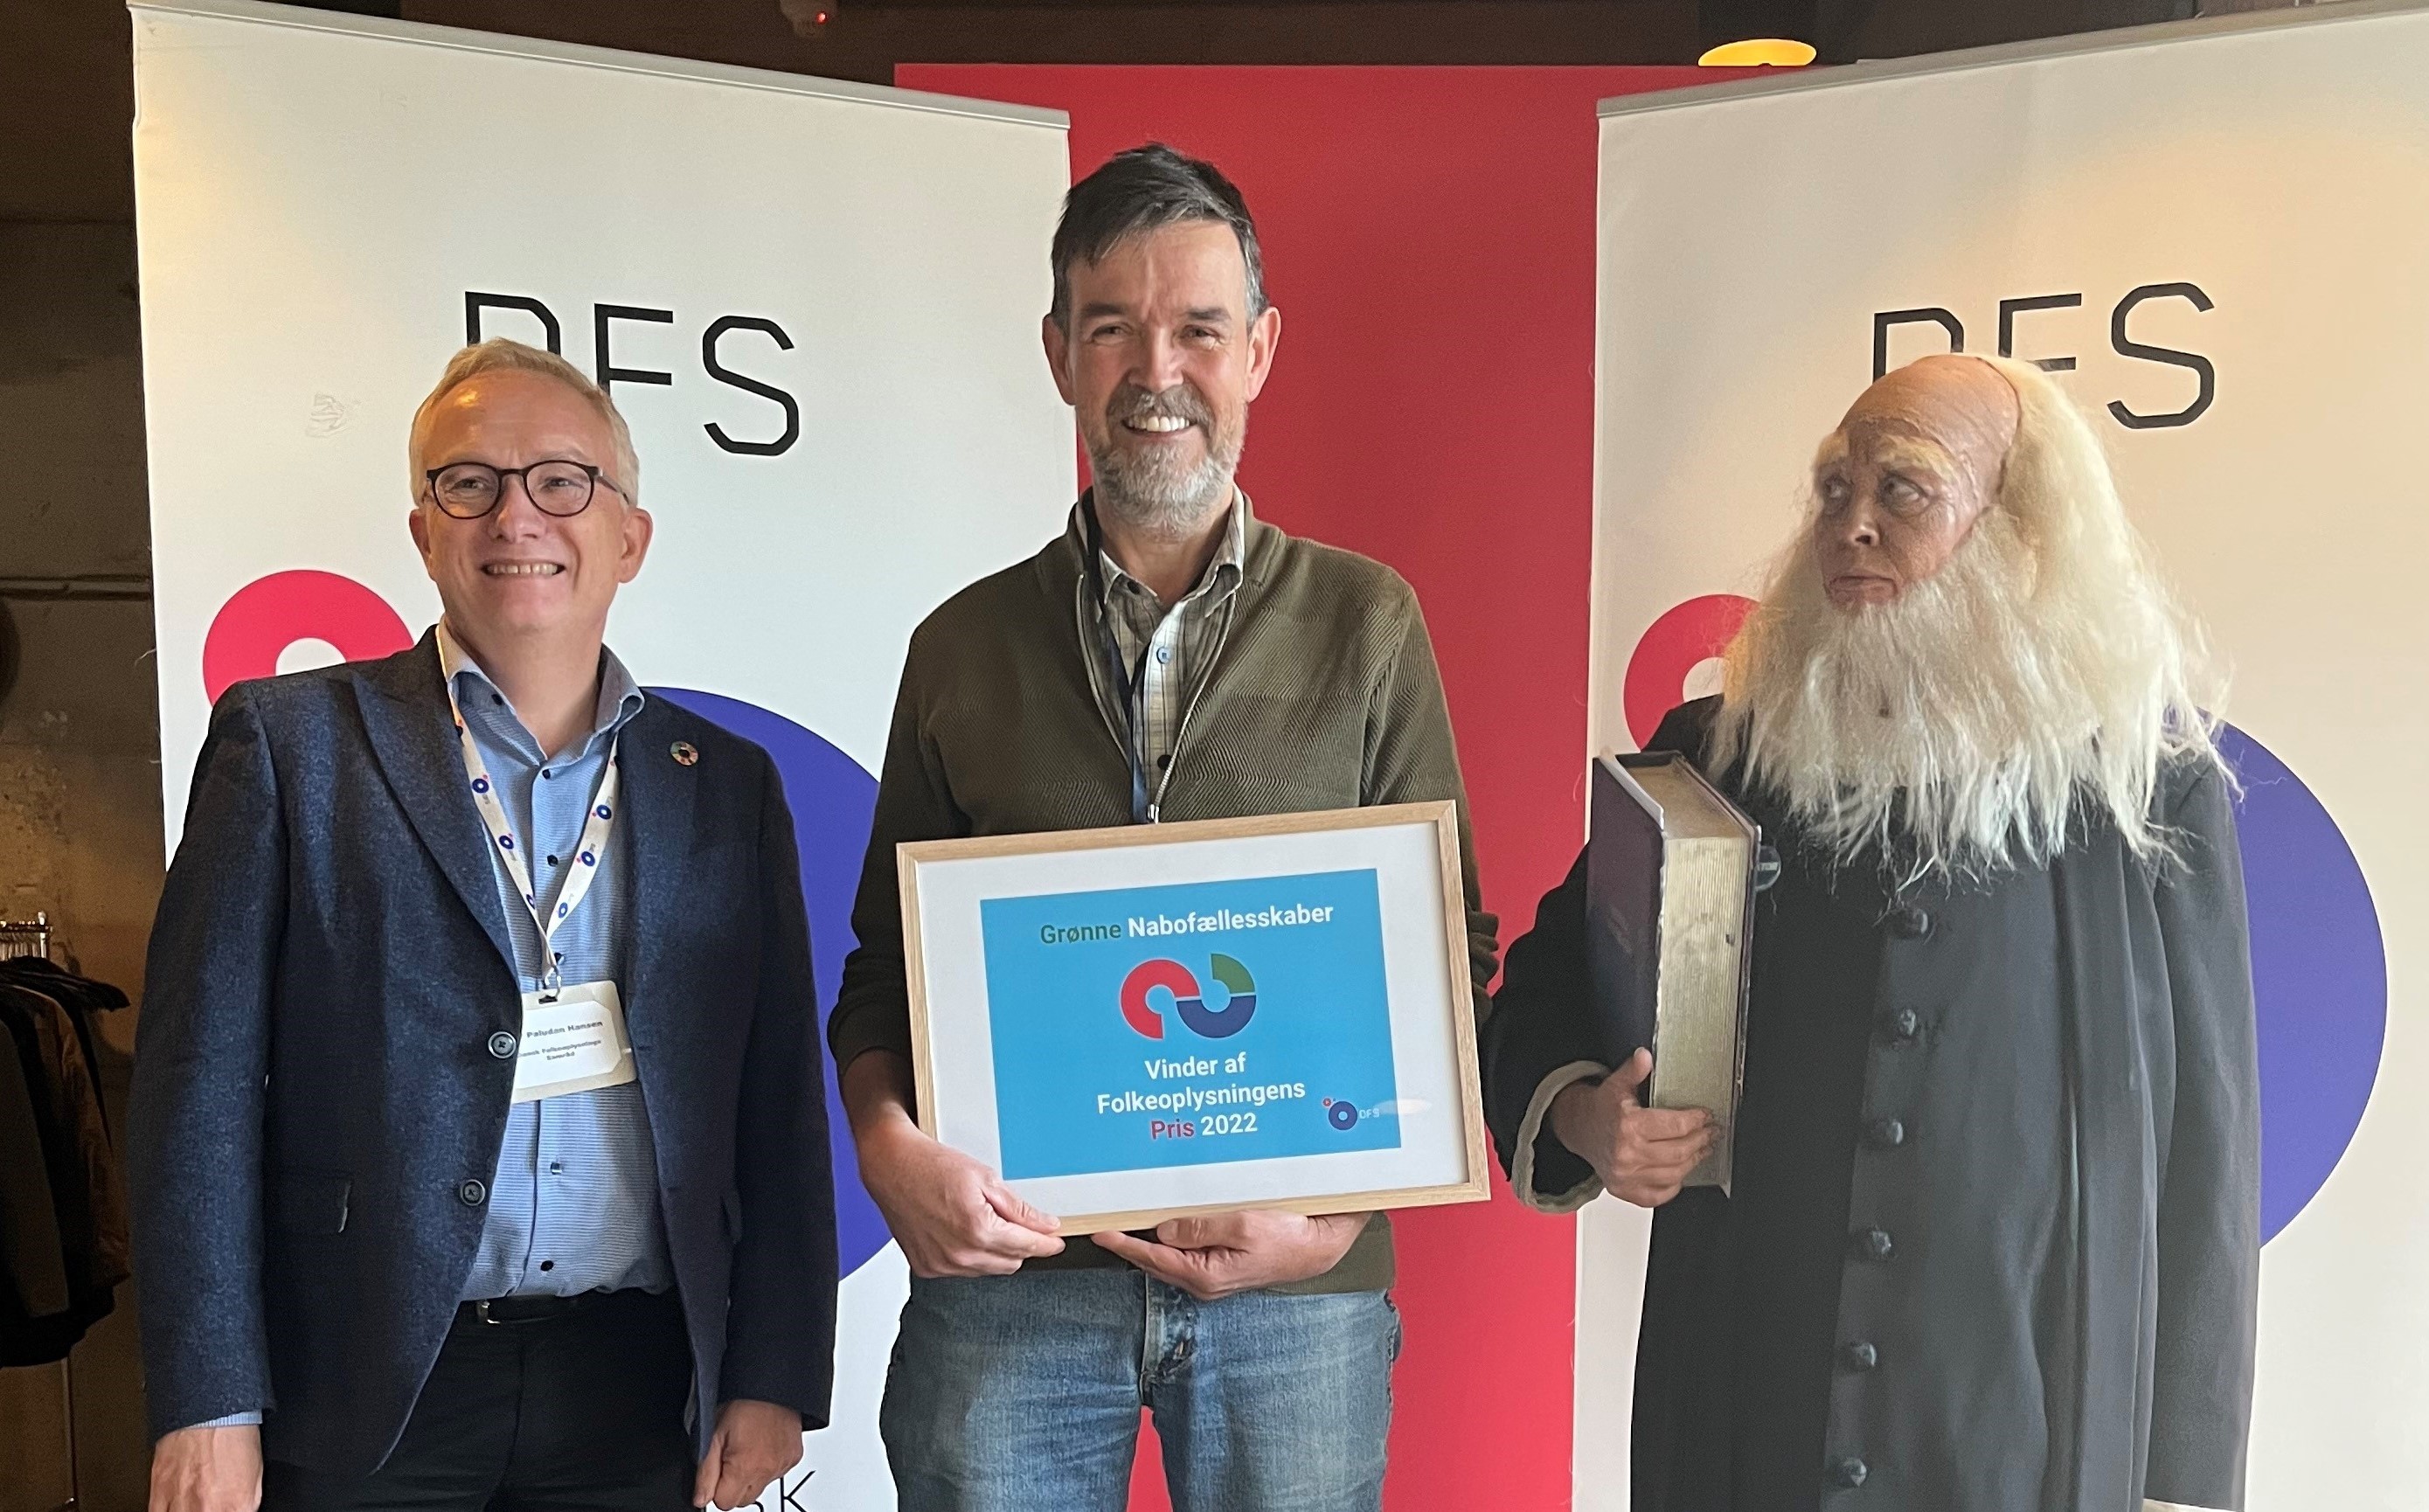 N.F.S. Grundtvig og DFS' formand, Per Paludan Hansen, overrakte prisen til sidste års vinder 'Grønne Nabofællesskaber'